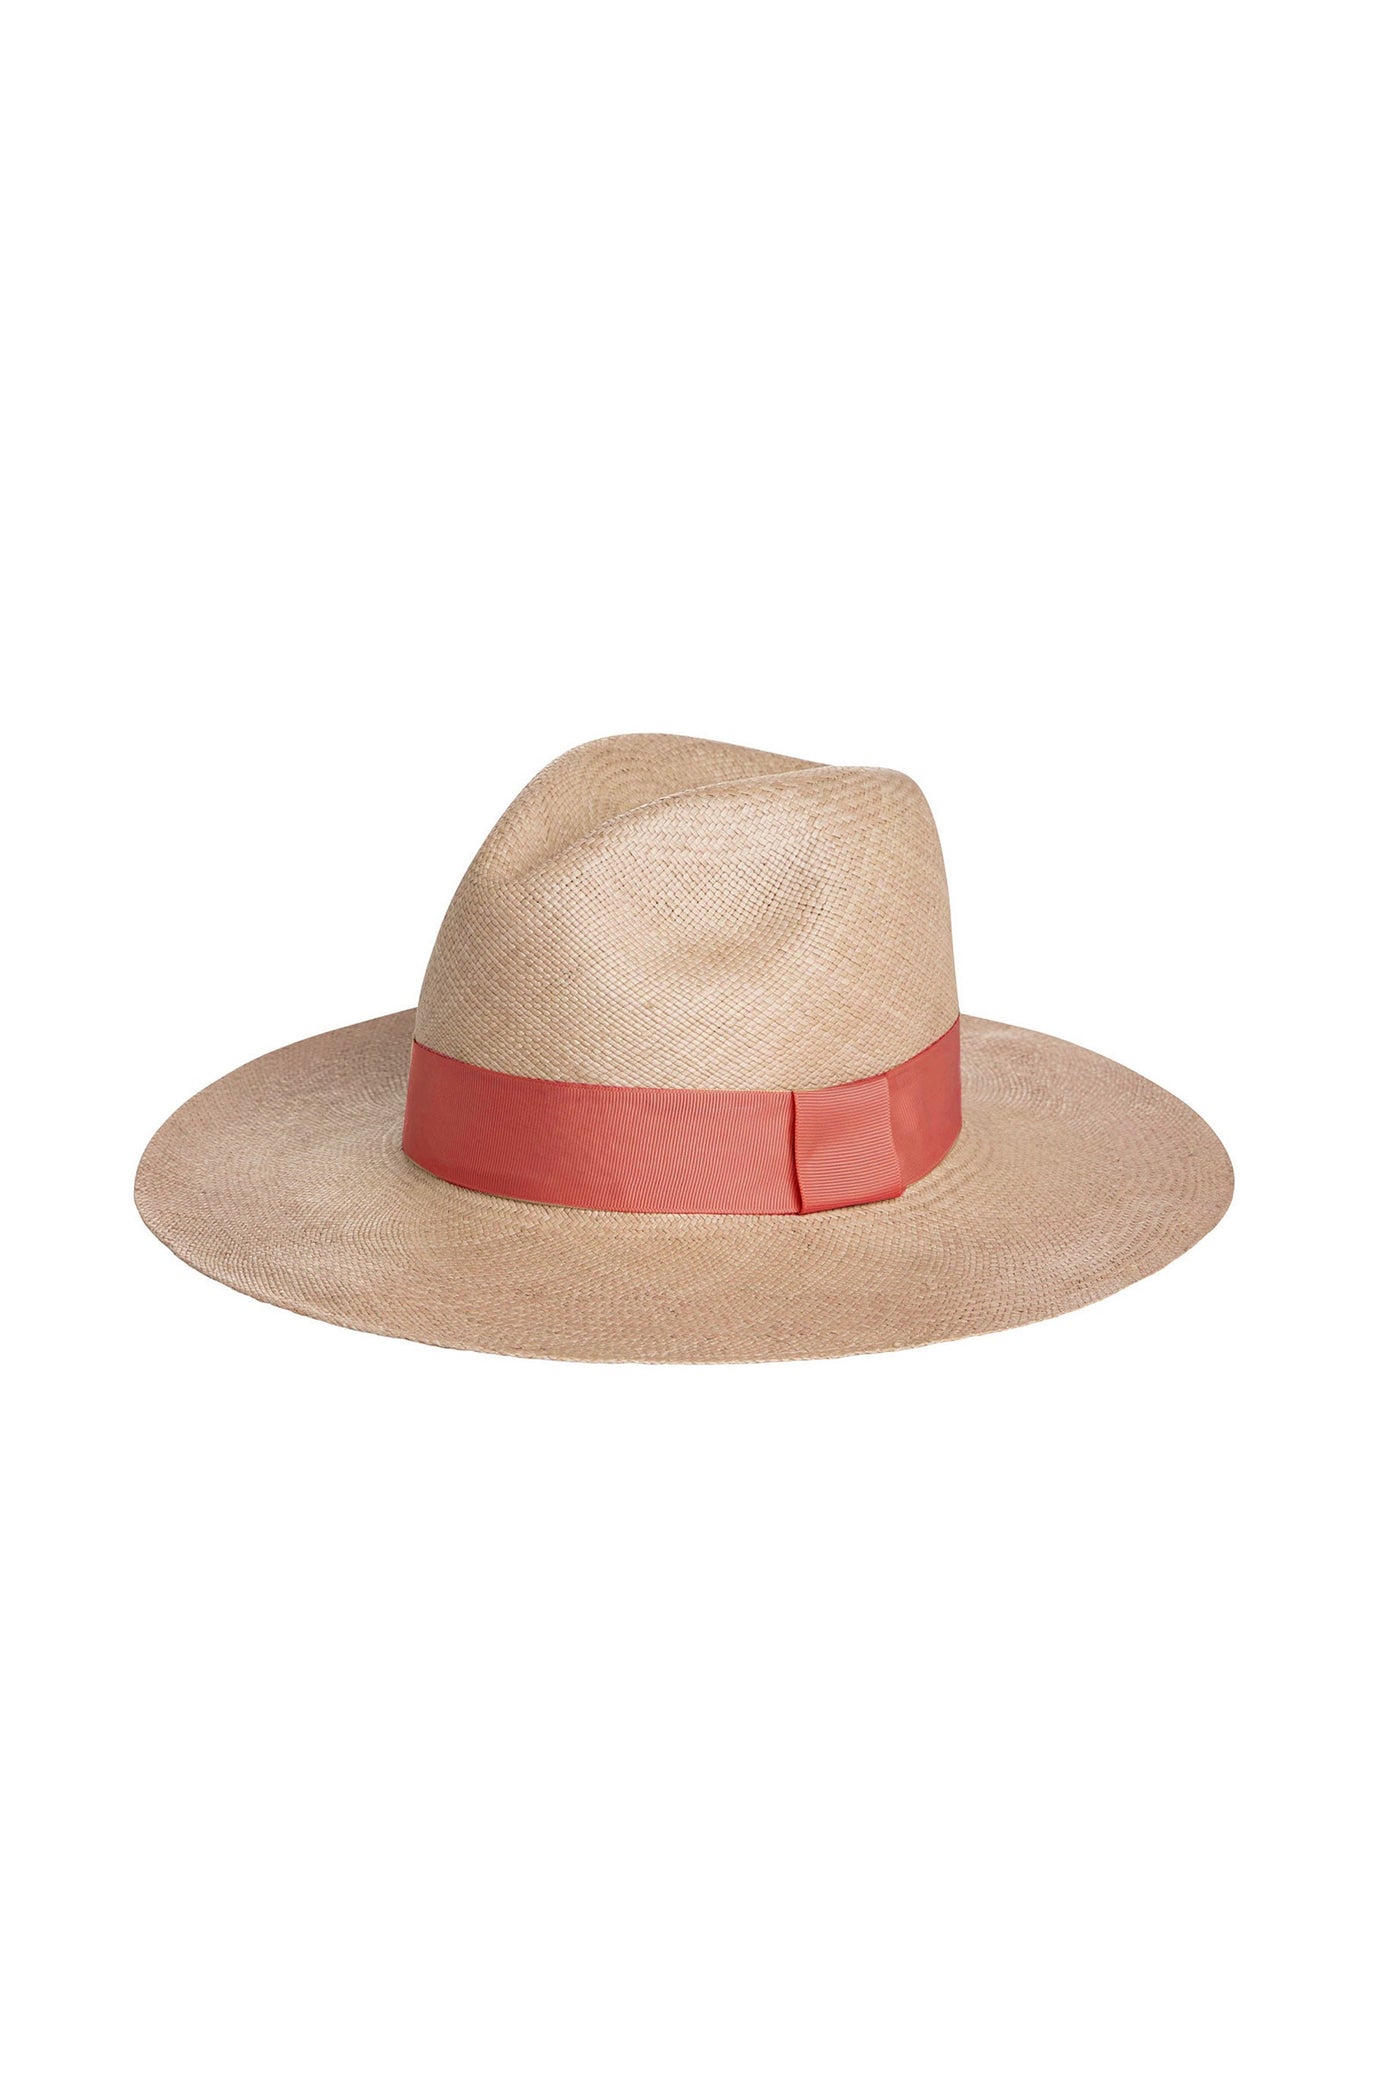 Sarah J Curtis Panama Hat - Natural